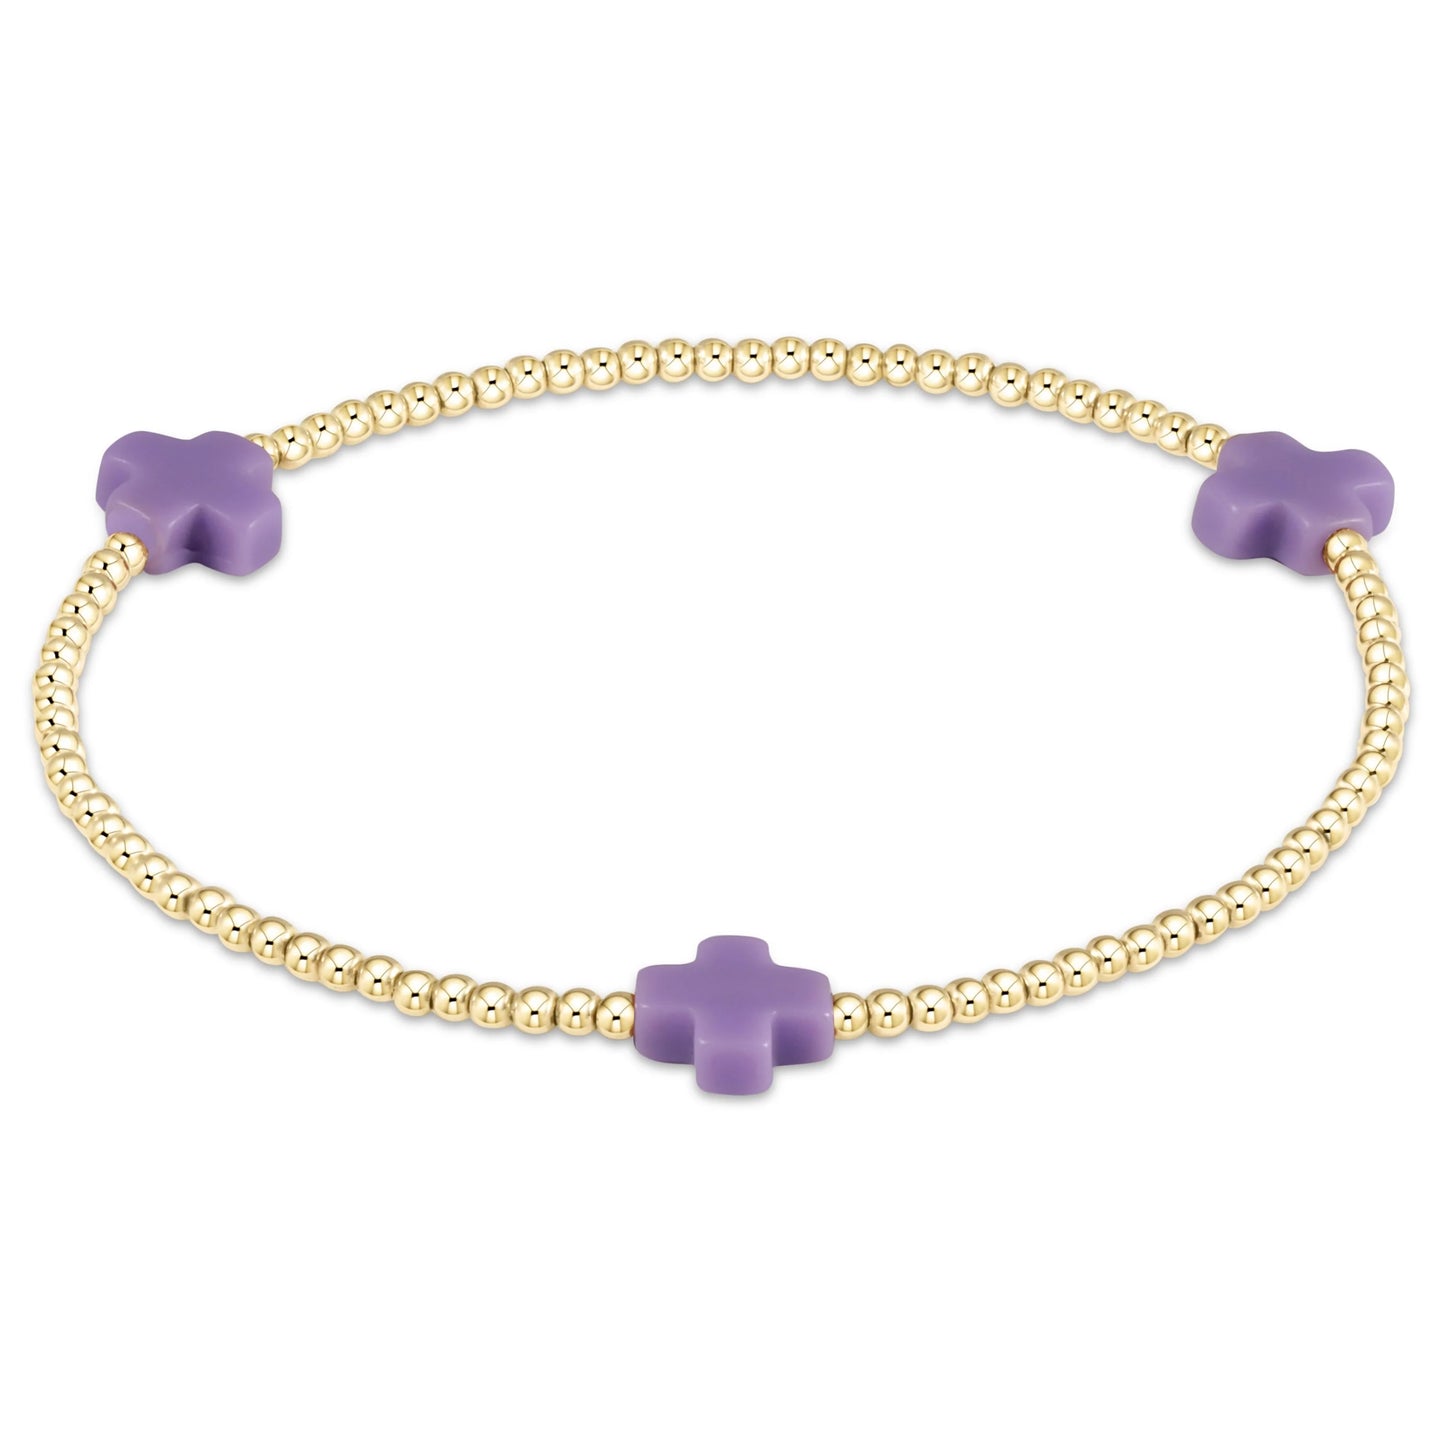 Girls Gold Filled Bead+Cross Bracelet